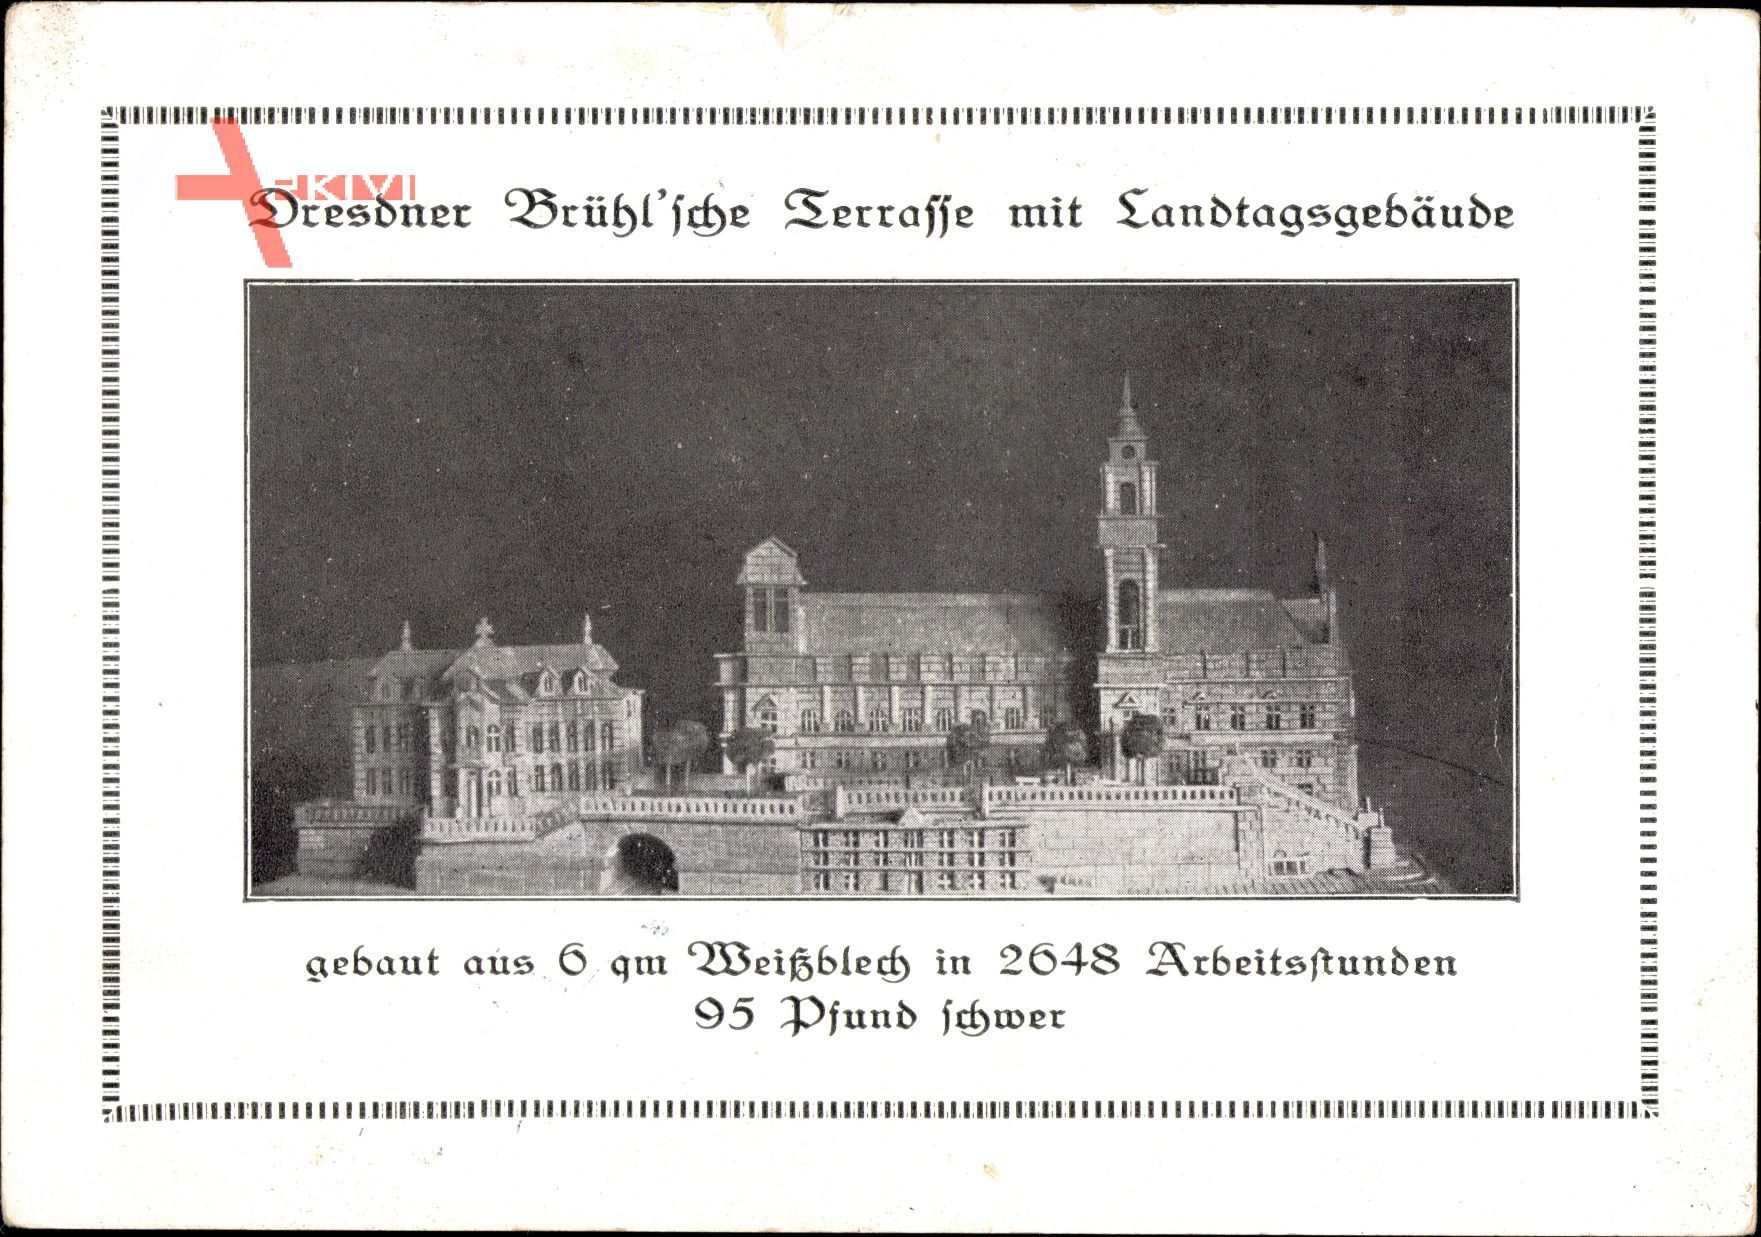 Dresden, Dresdner Brühl'sche Terrasse mit Landtagsgebäude, Modell